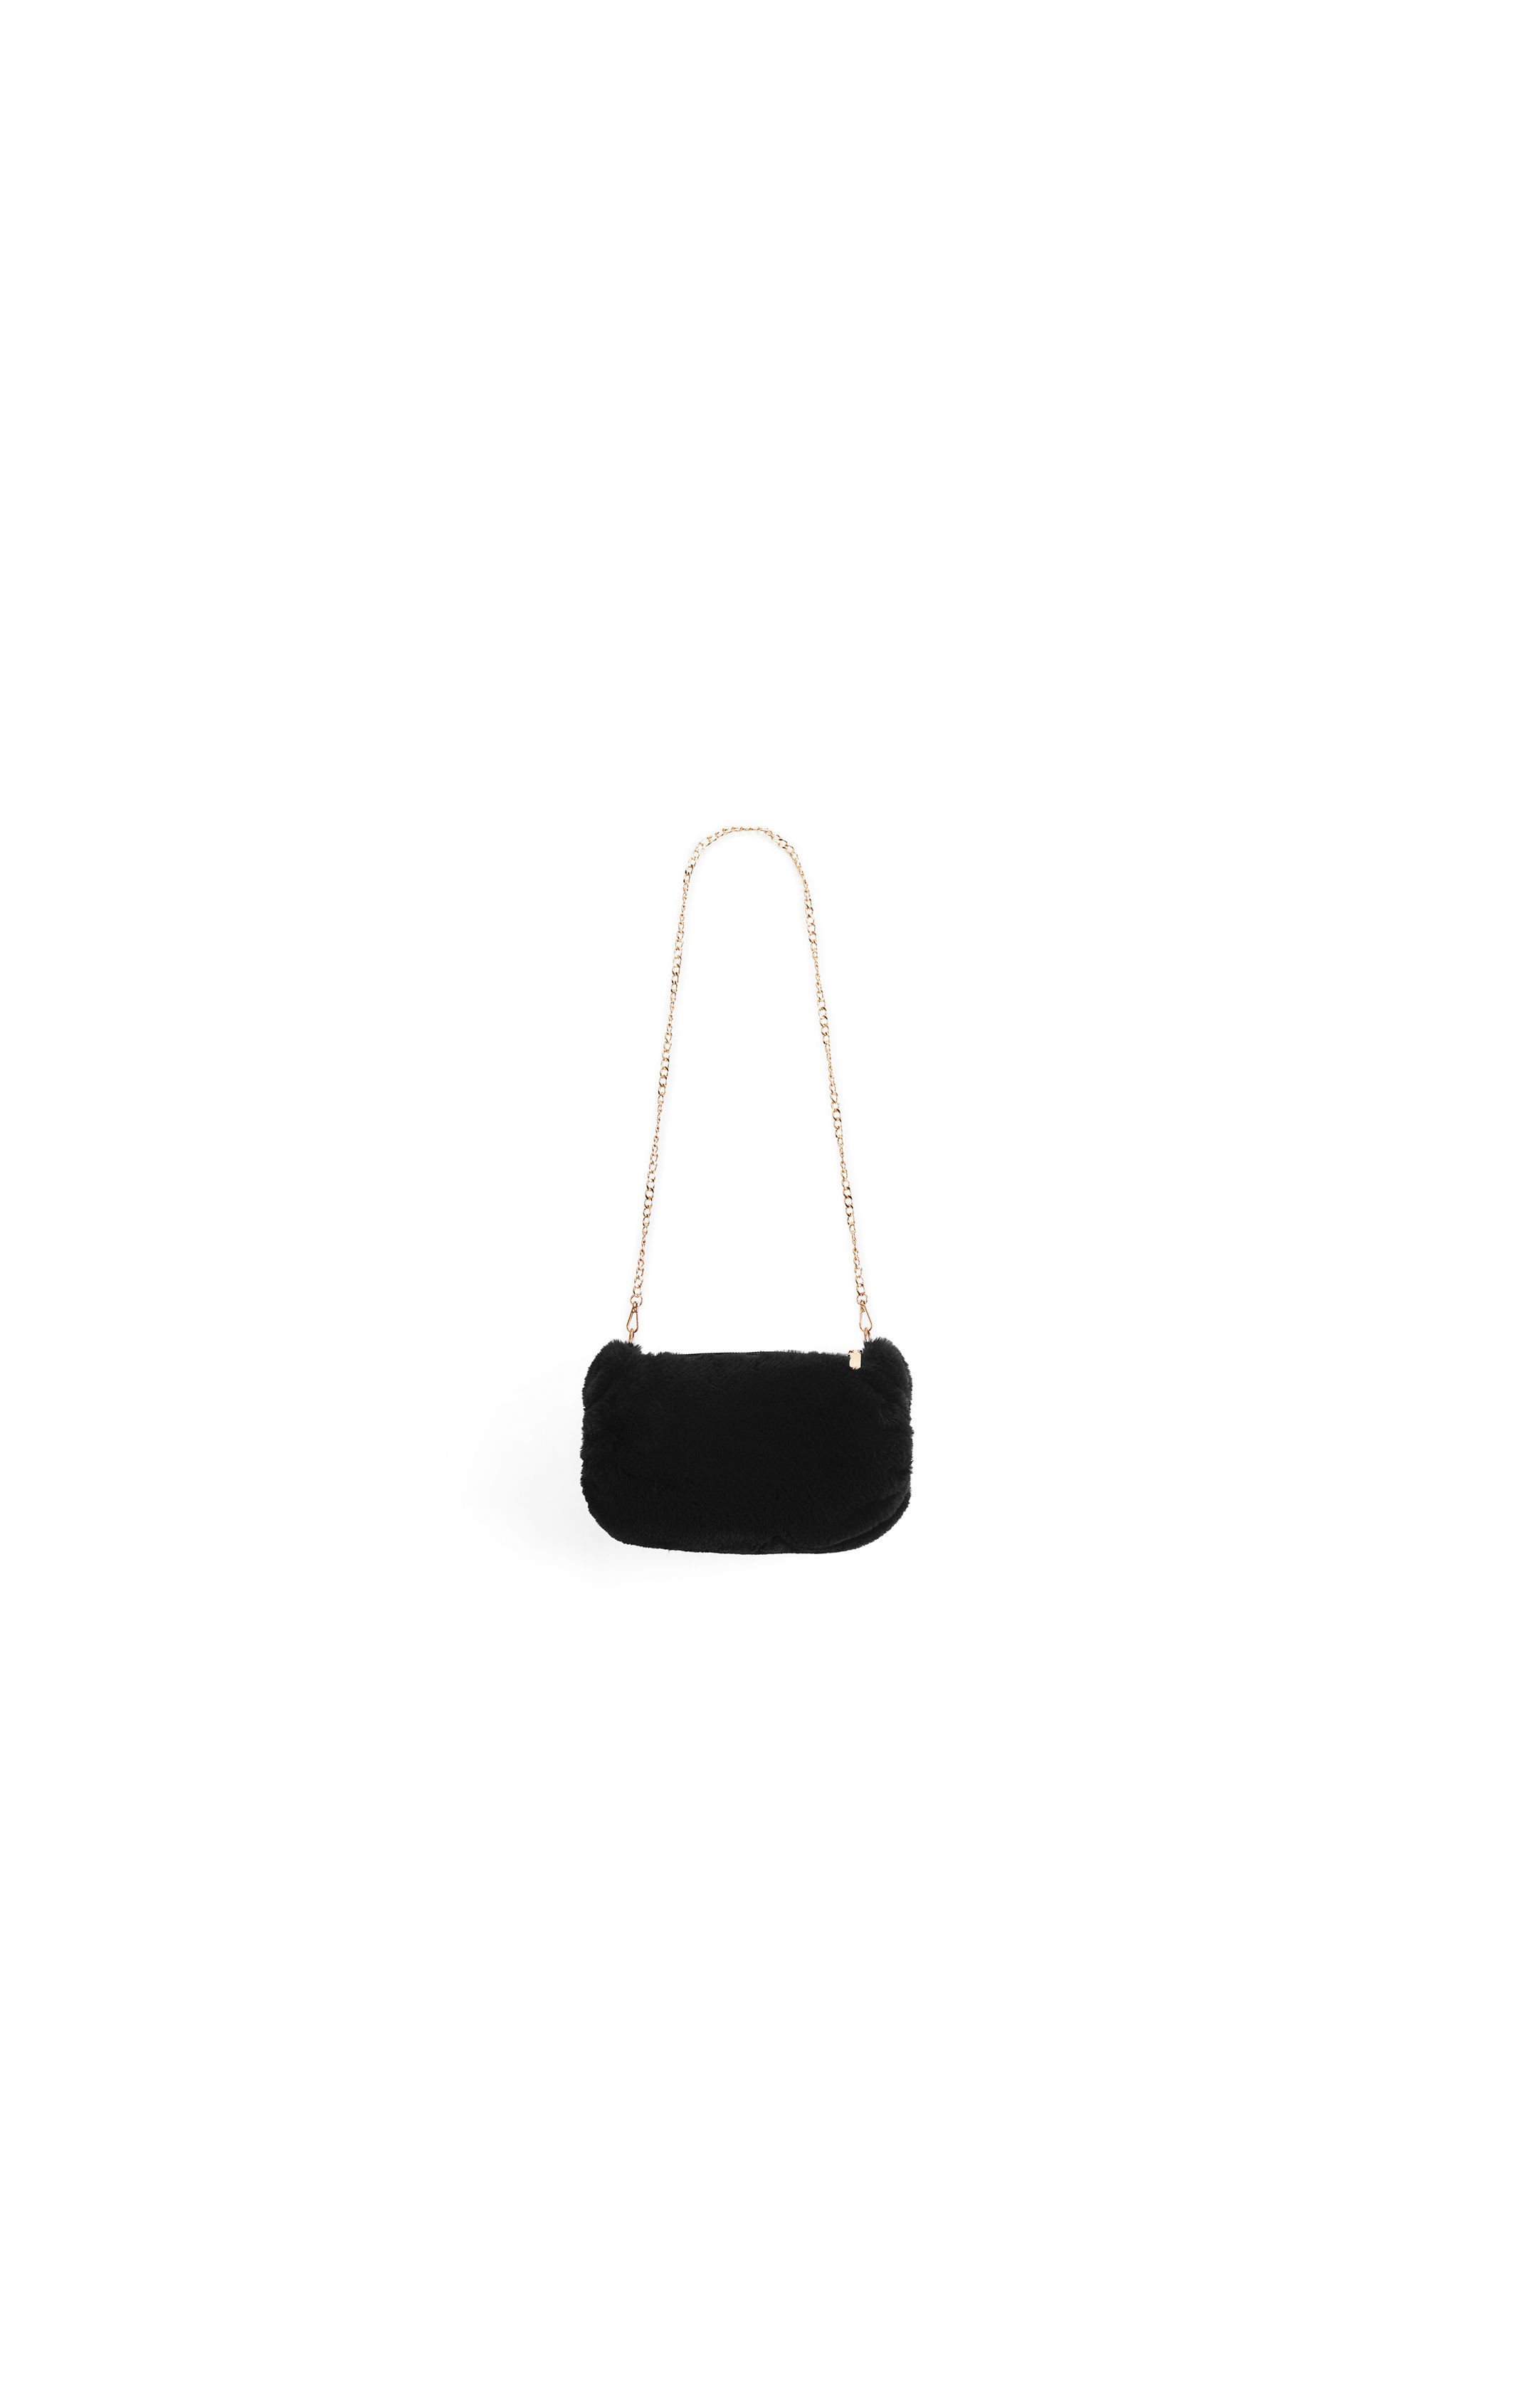 Hand bag Orso Black multicolore